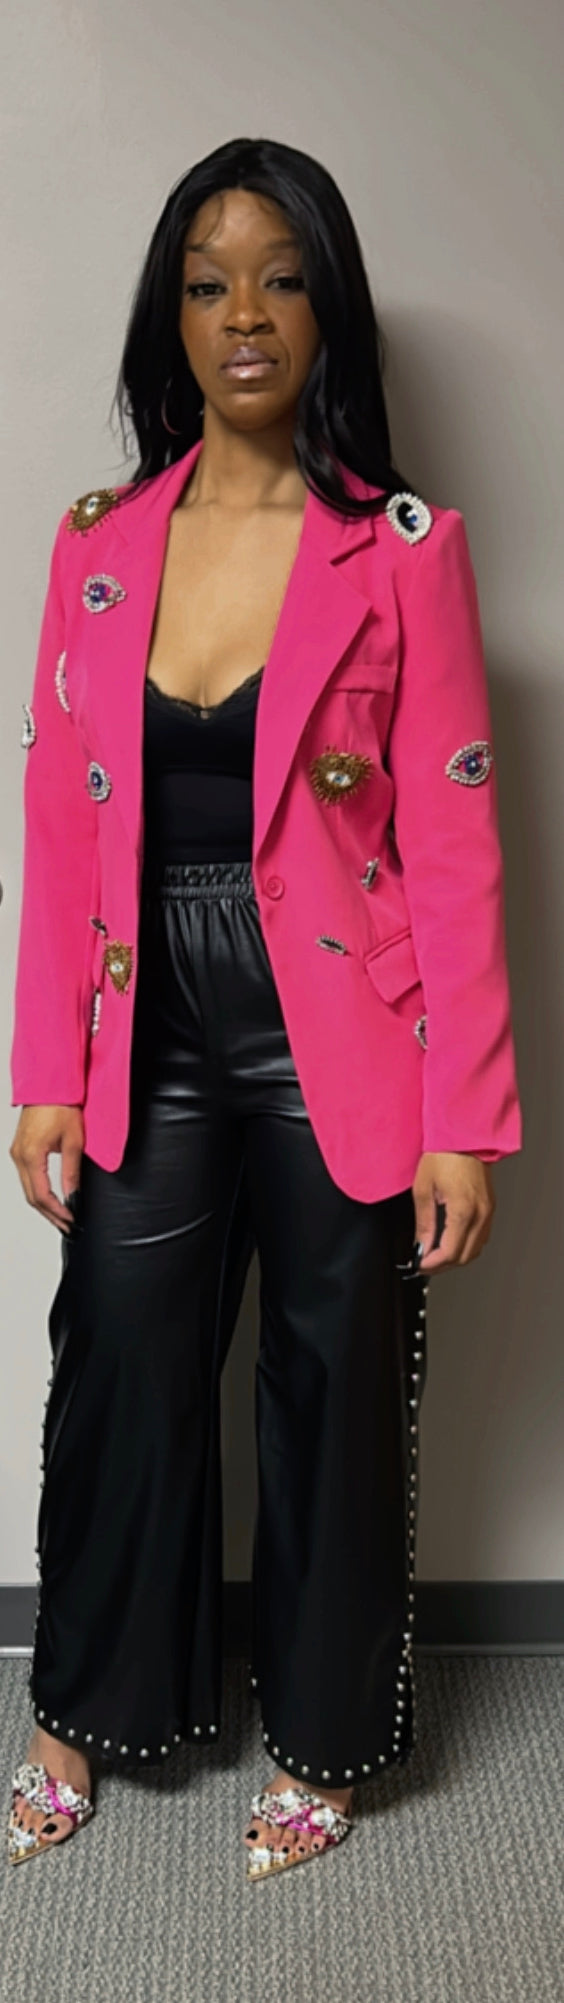 Pink Classy Jeweled Blazer